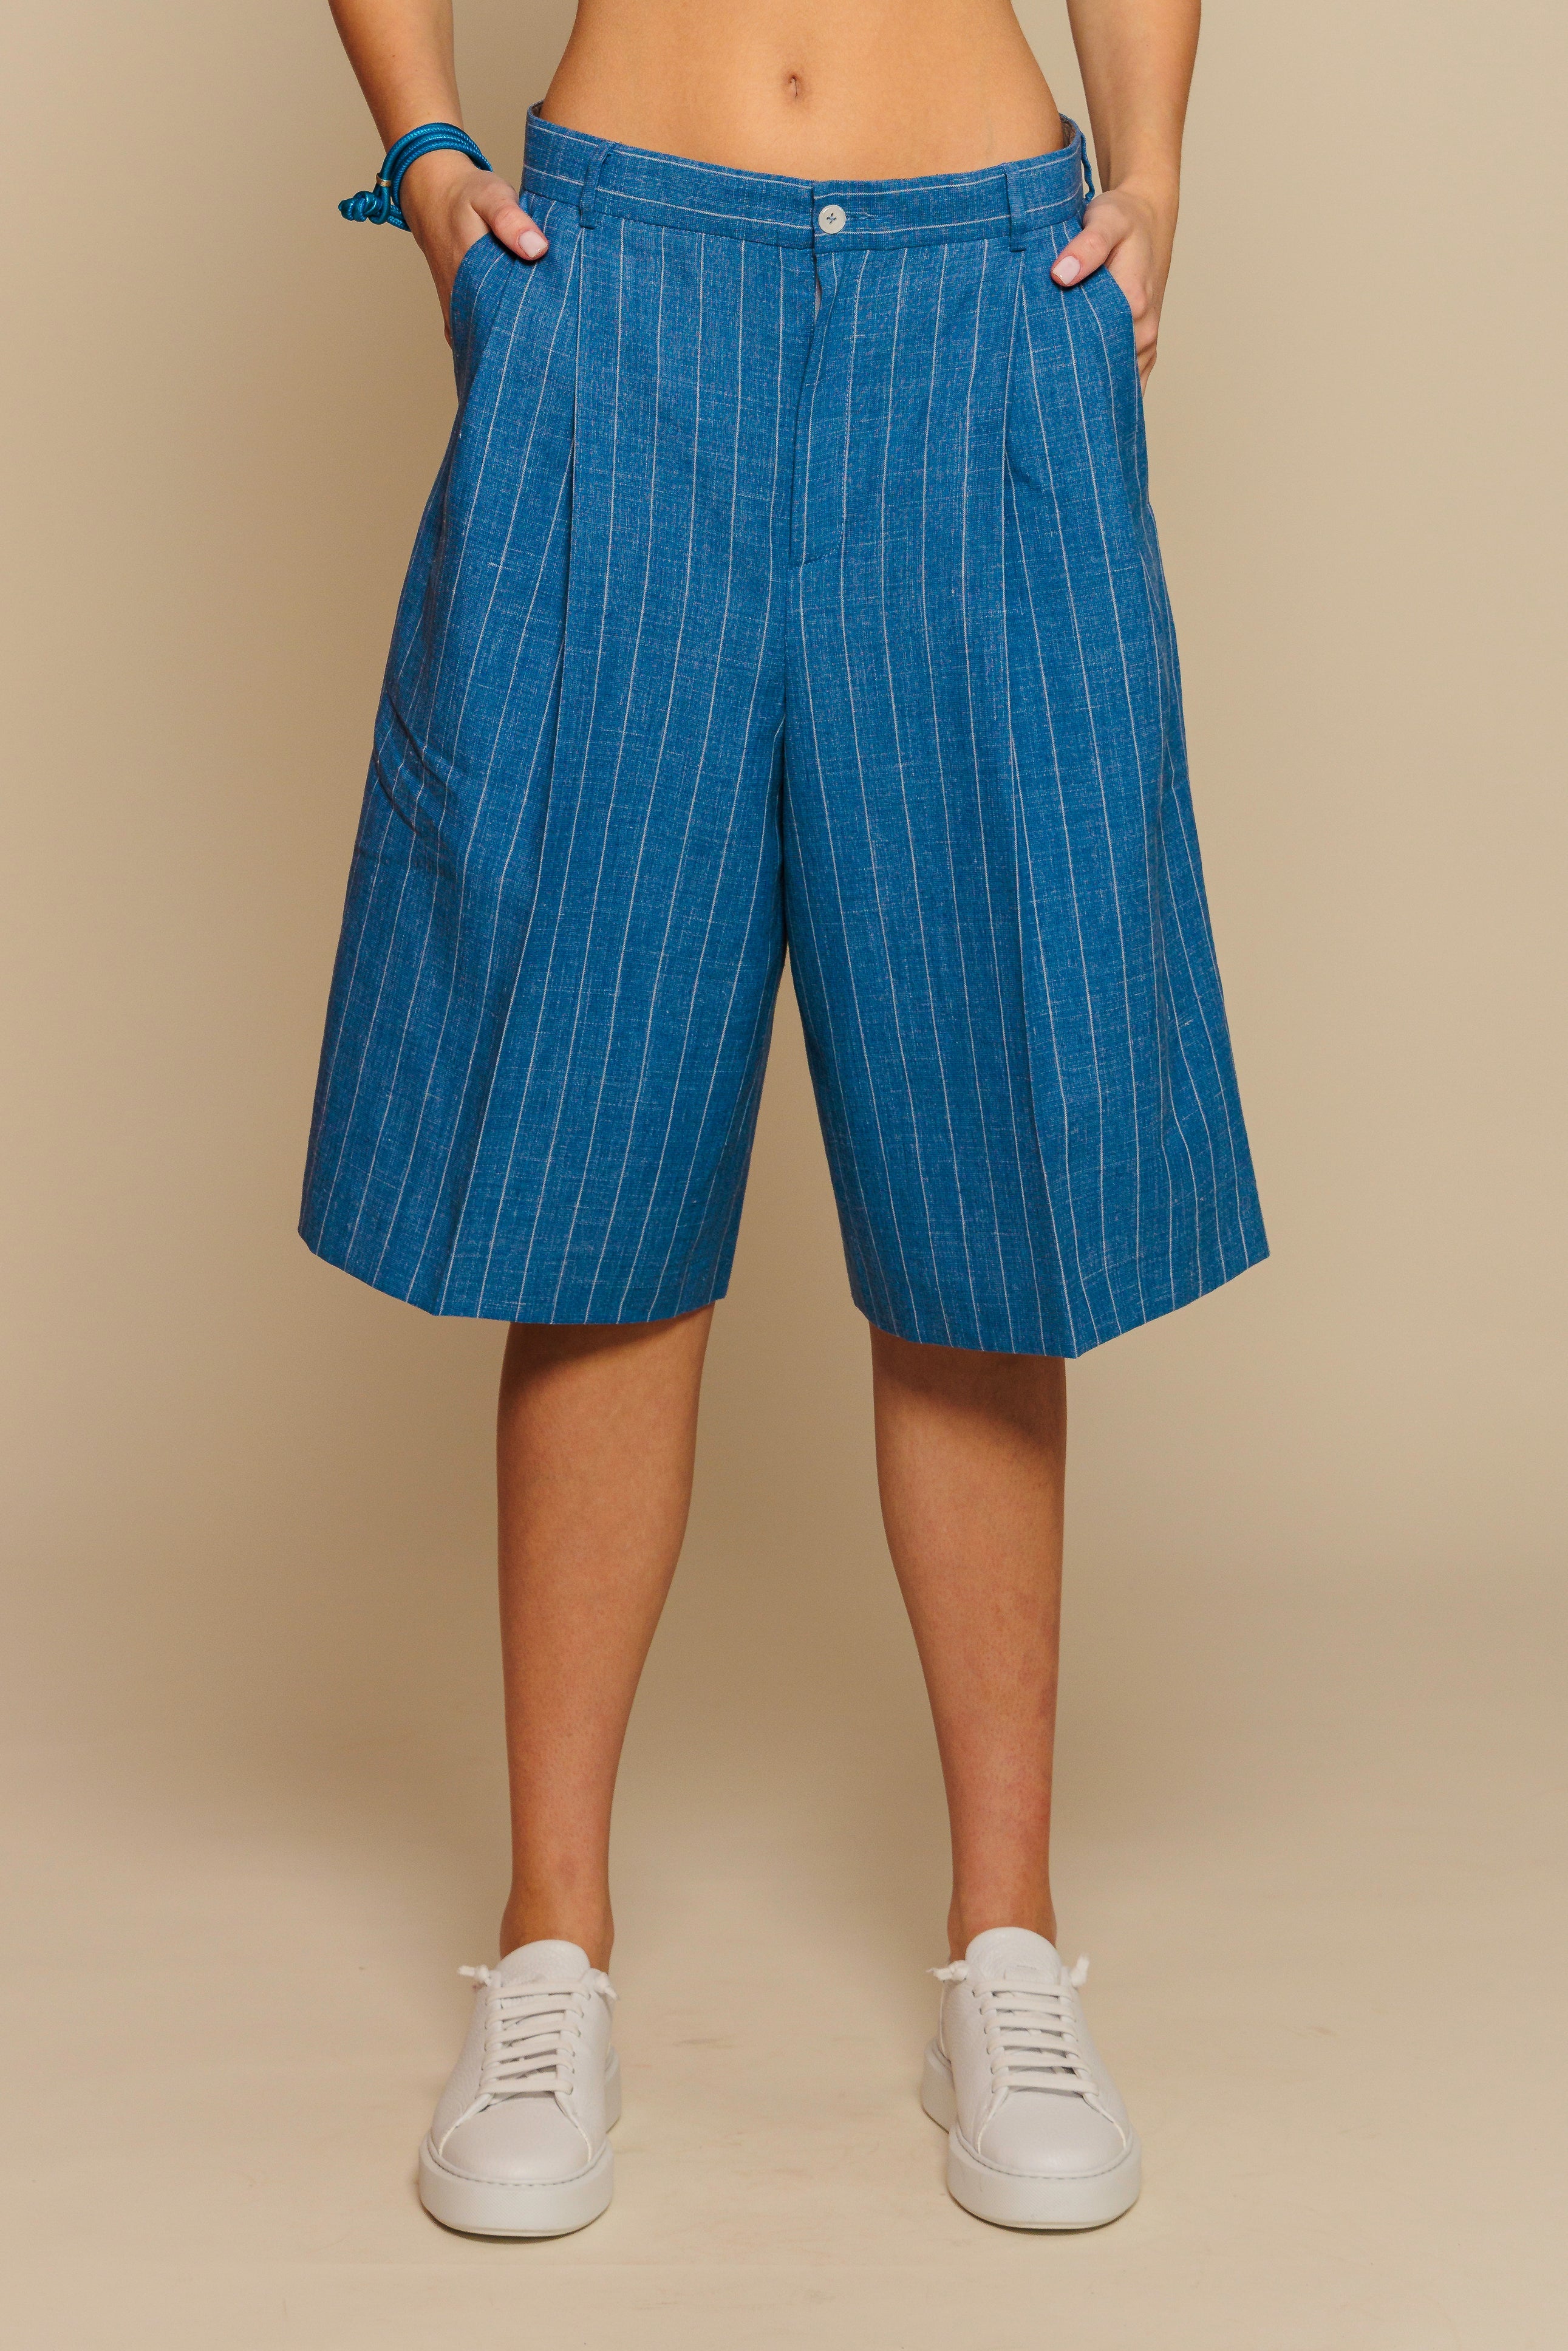 Trousers "BORDEAUX SH" / Superfine Wool, Linen & Silk by Loro Piana